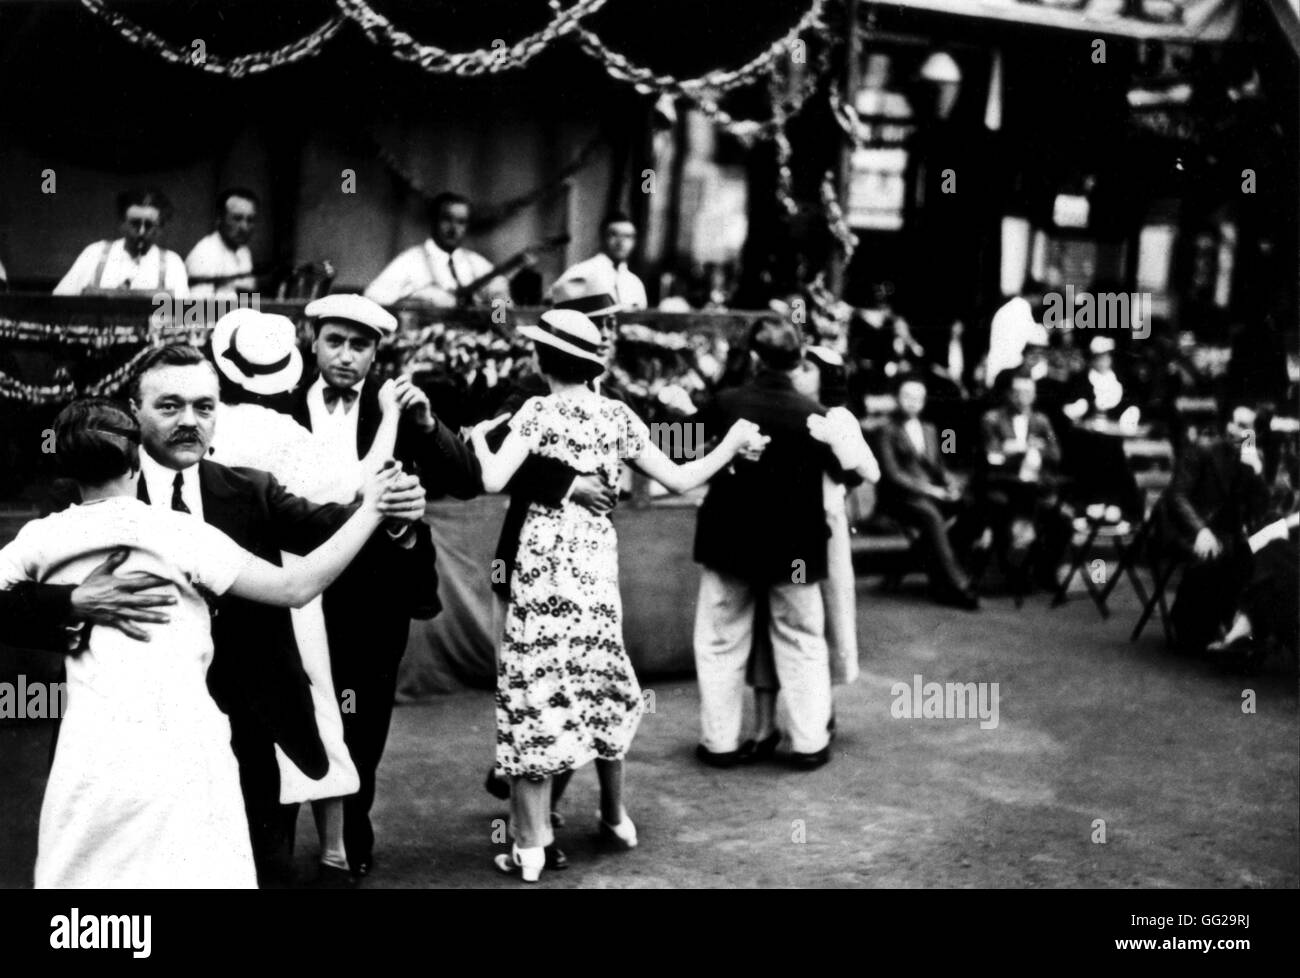 Le 14 juillet bal populaire à Paris Juillet 1935 France Banque D'Images